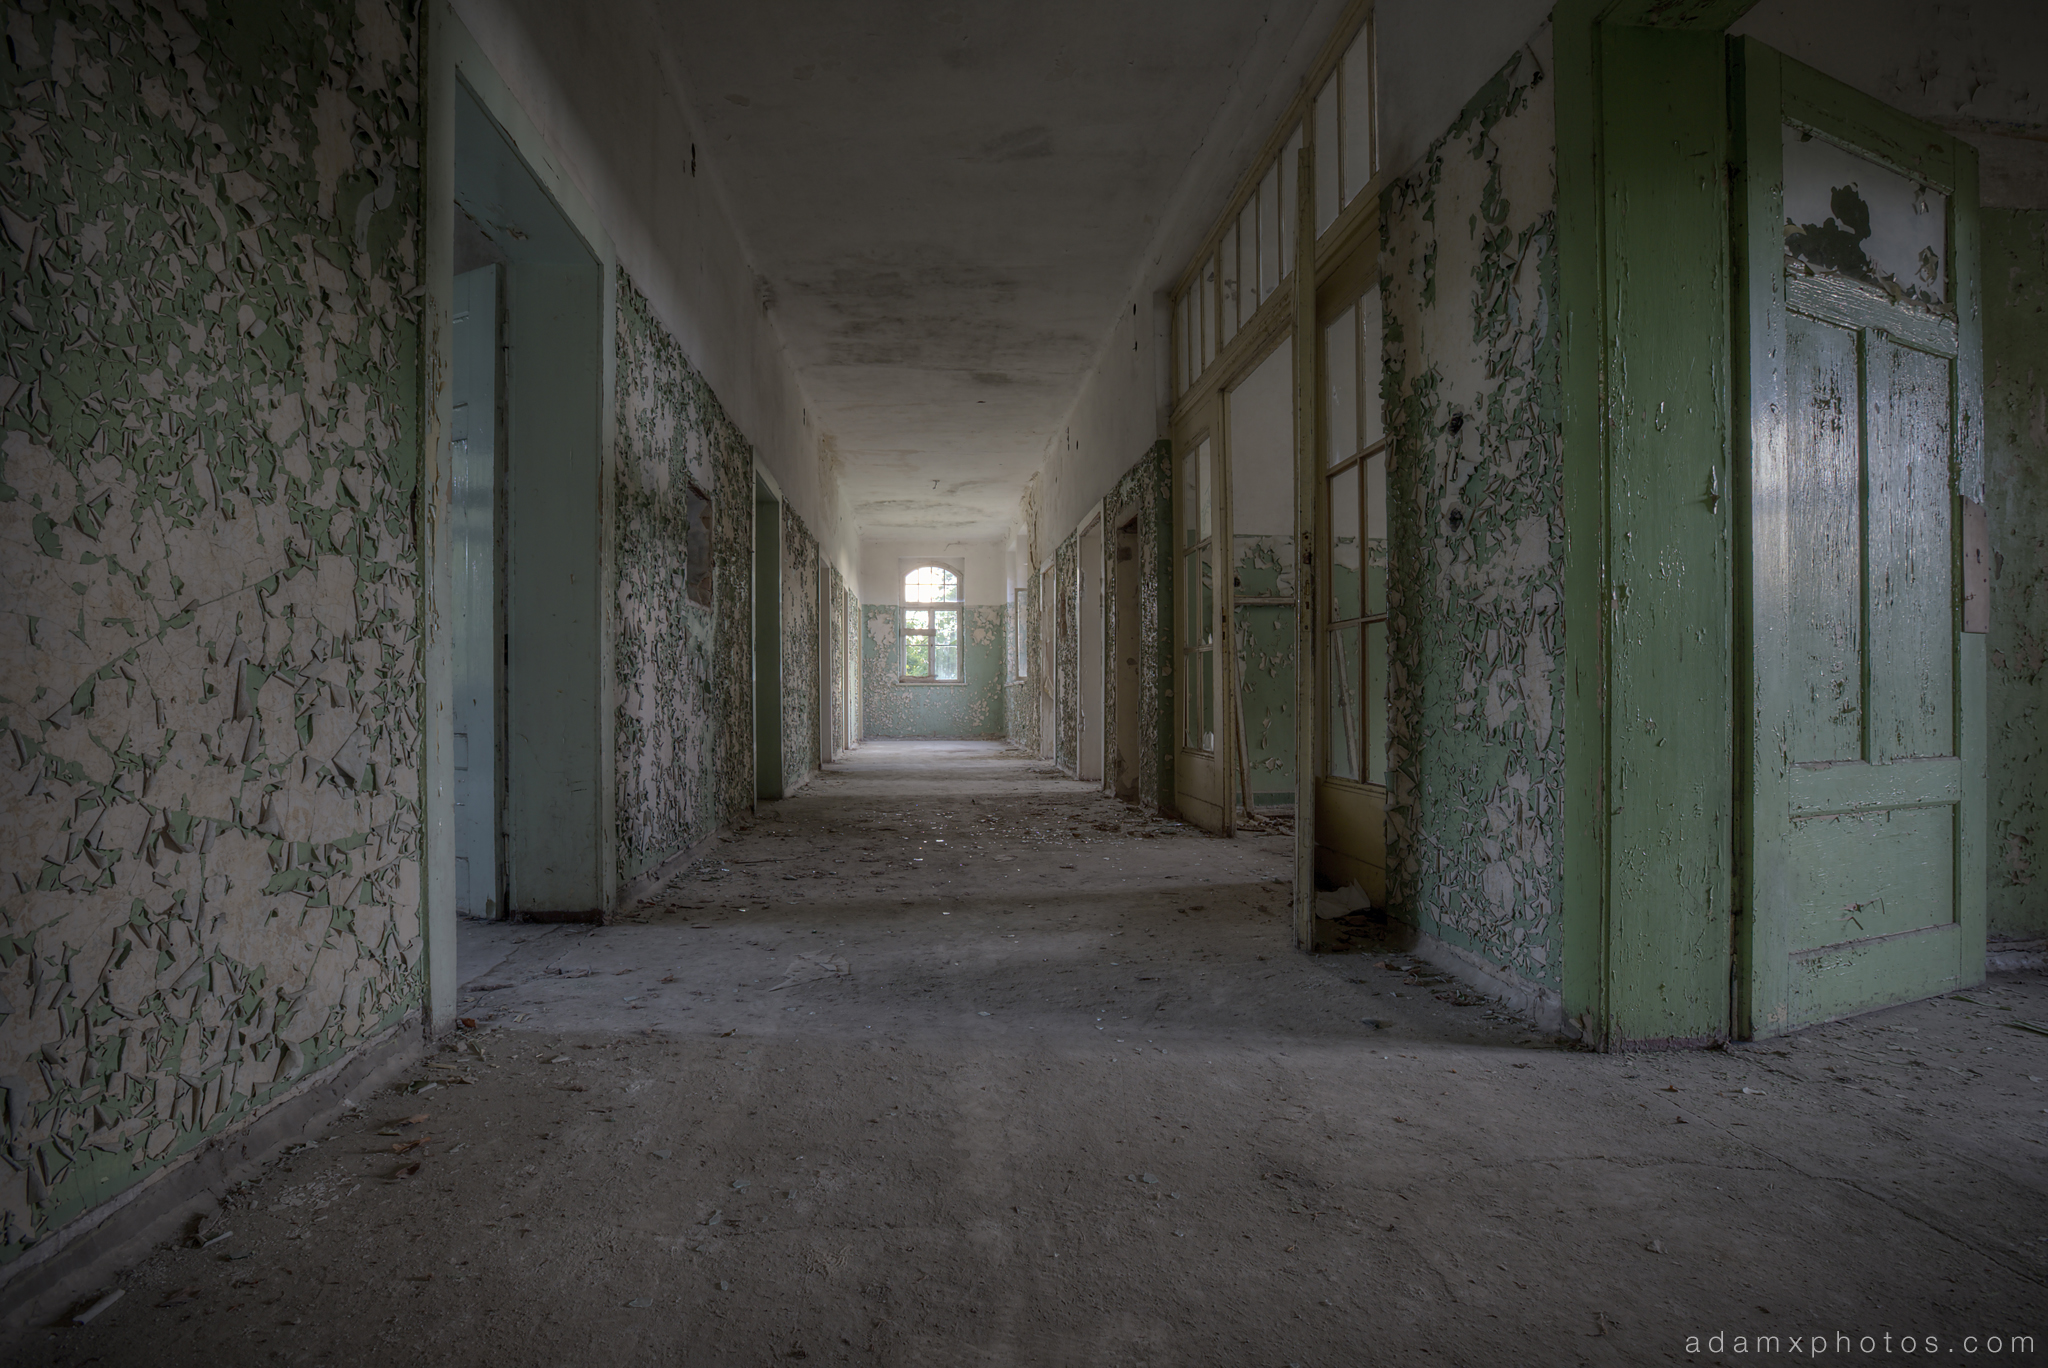 Adam X Urbex Heilstatten Hohenlychen Germany Urban Exploration Decay Lost Abandoned Hidden corridor peeling paint green